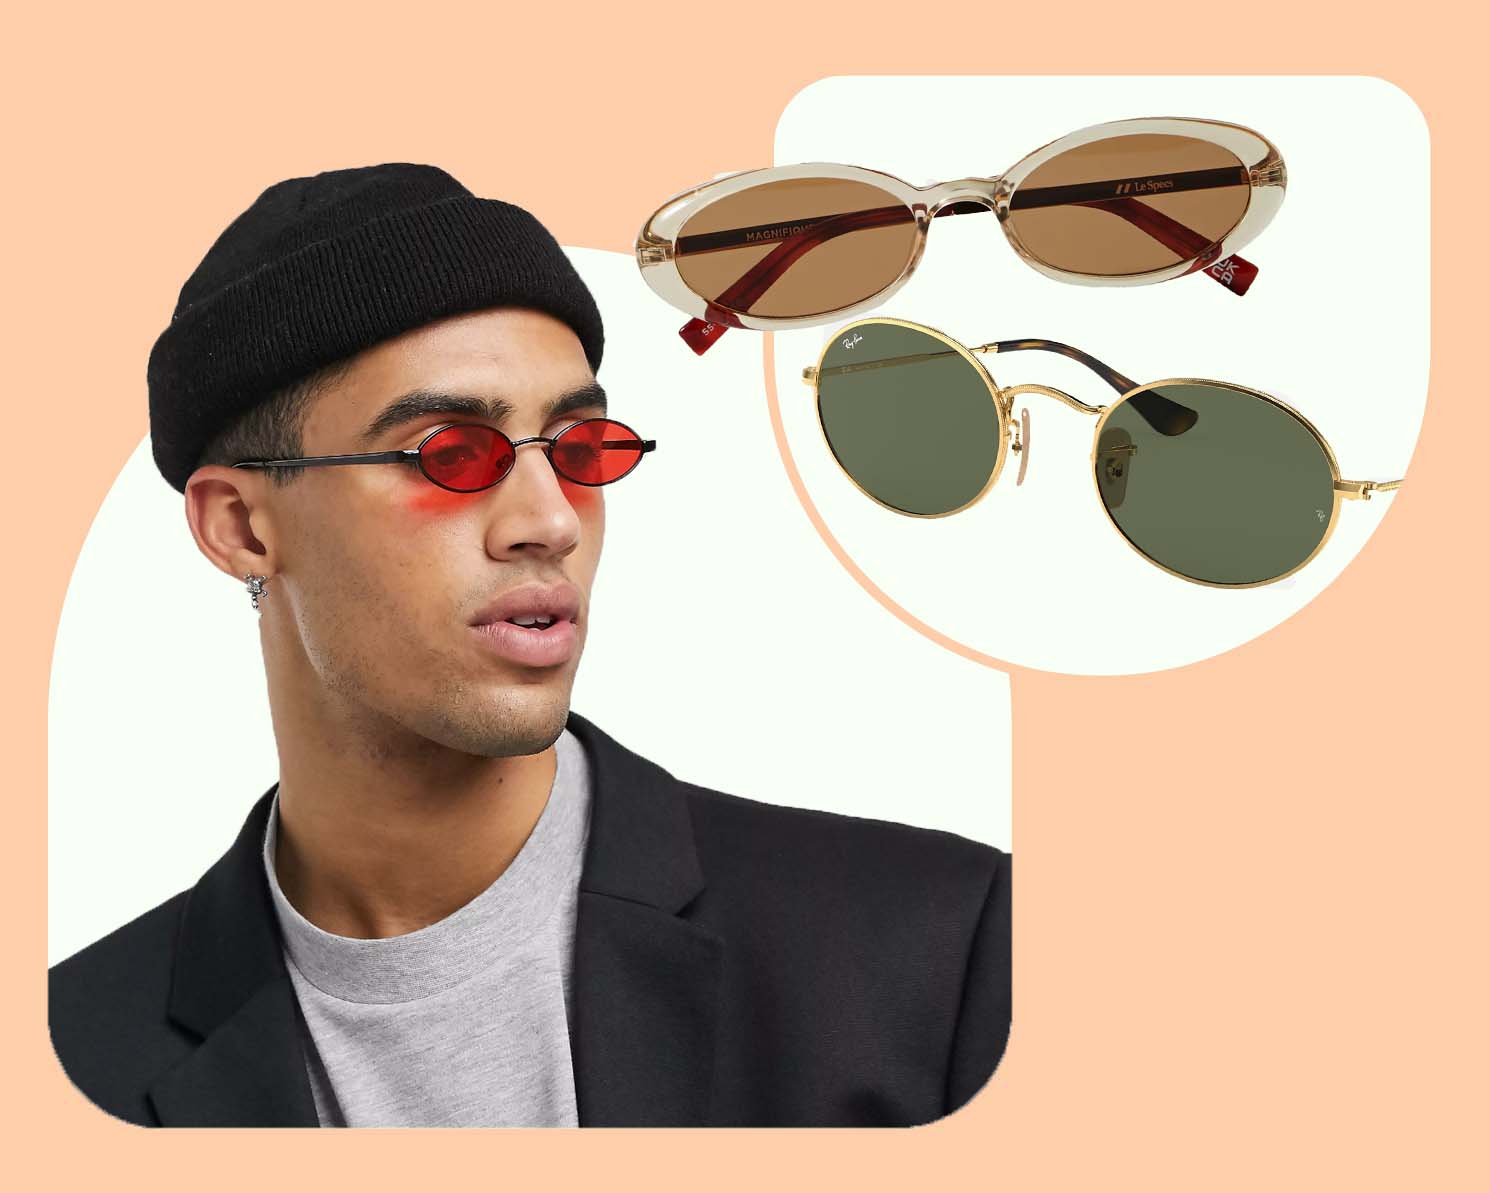 Round sunglasses, for men?